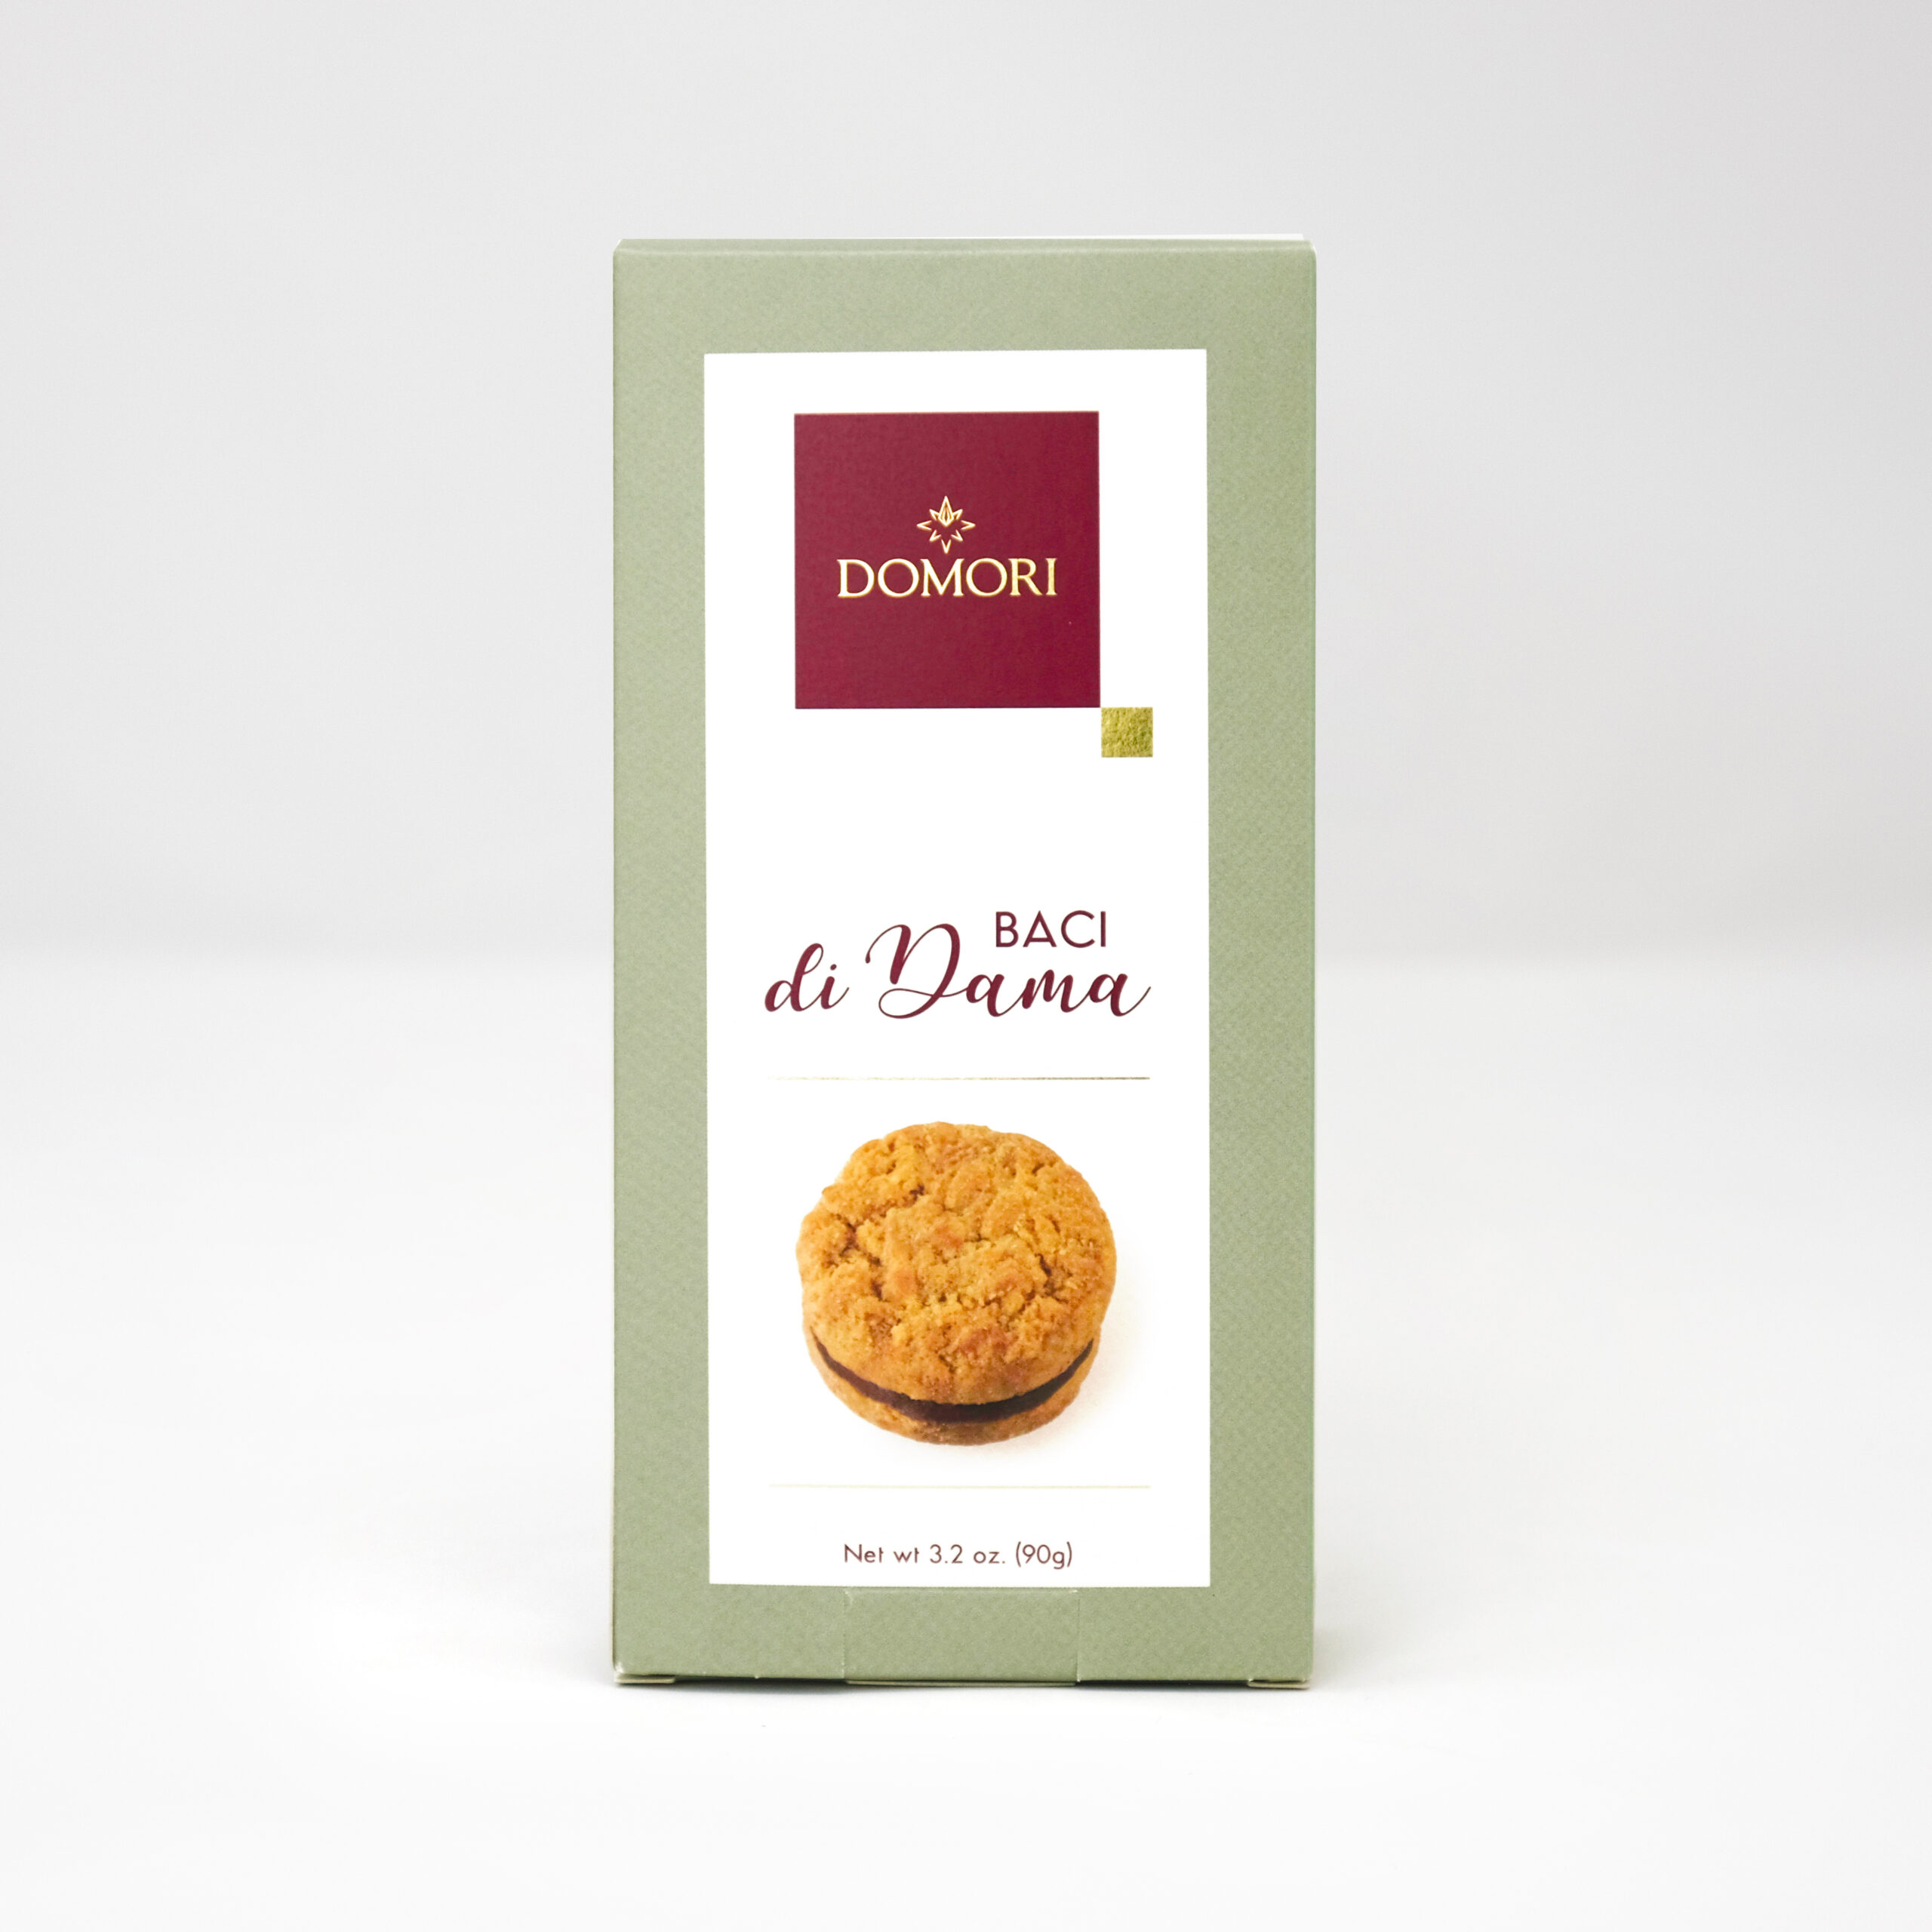 Domori Baci di Dama biscuits sablés gr 90